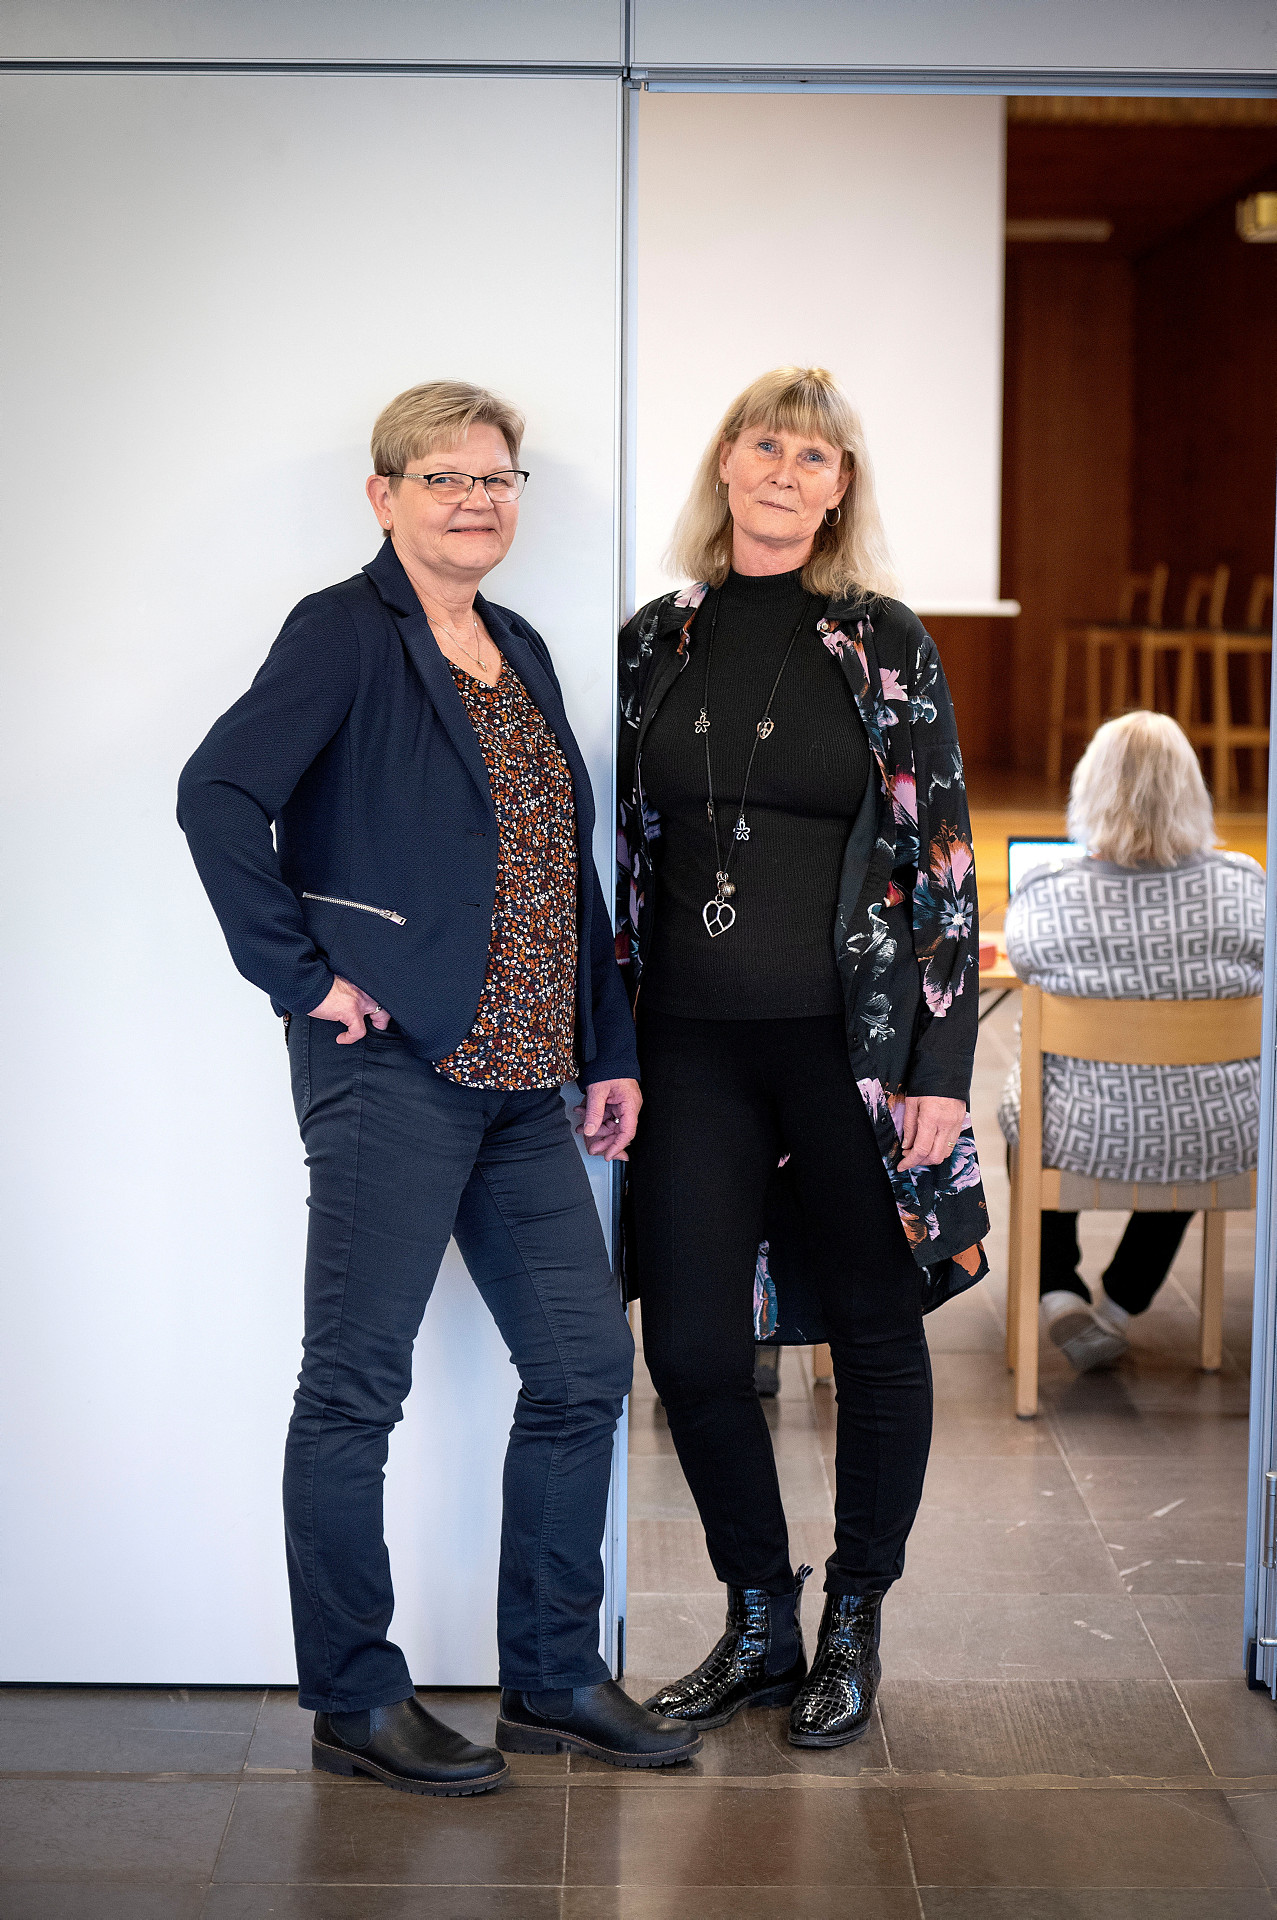 Anita Glemring och Helene Berglund uppmanar till engagemang i demokratin i kyrkan